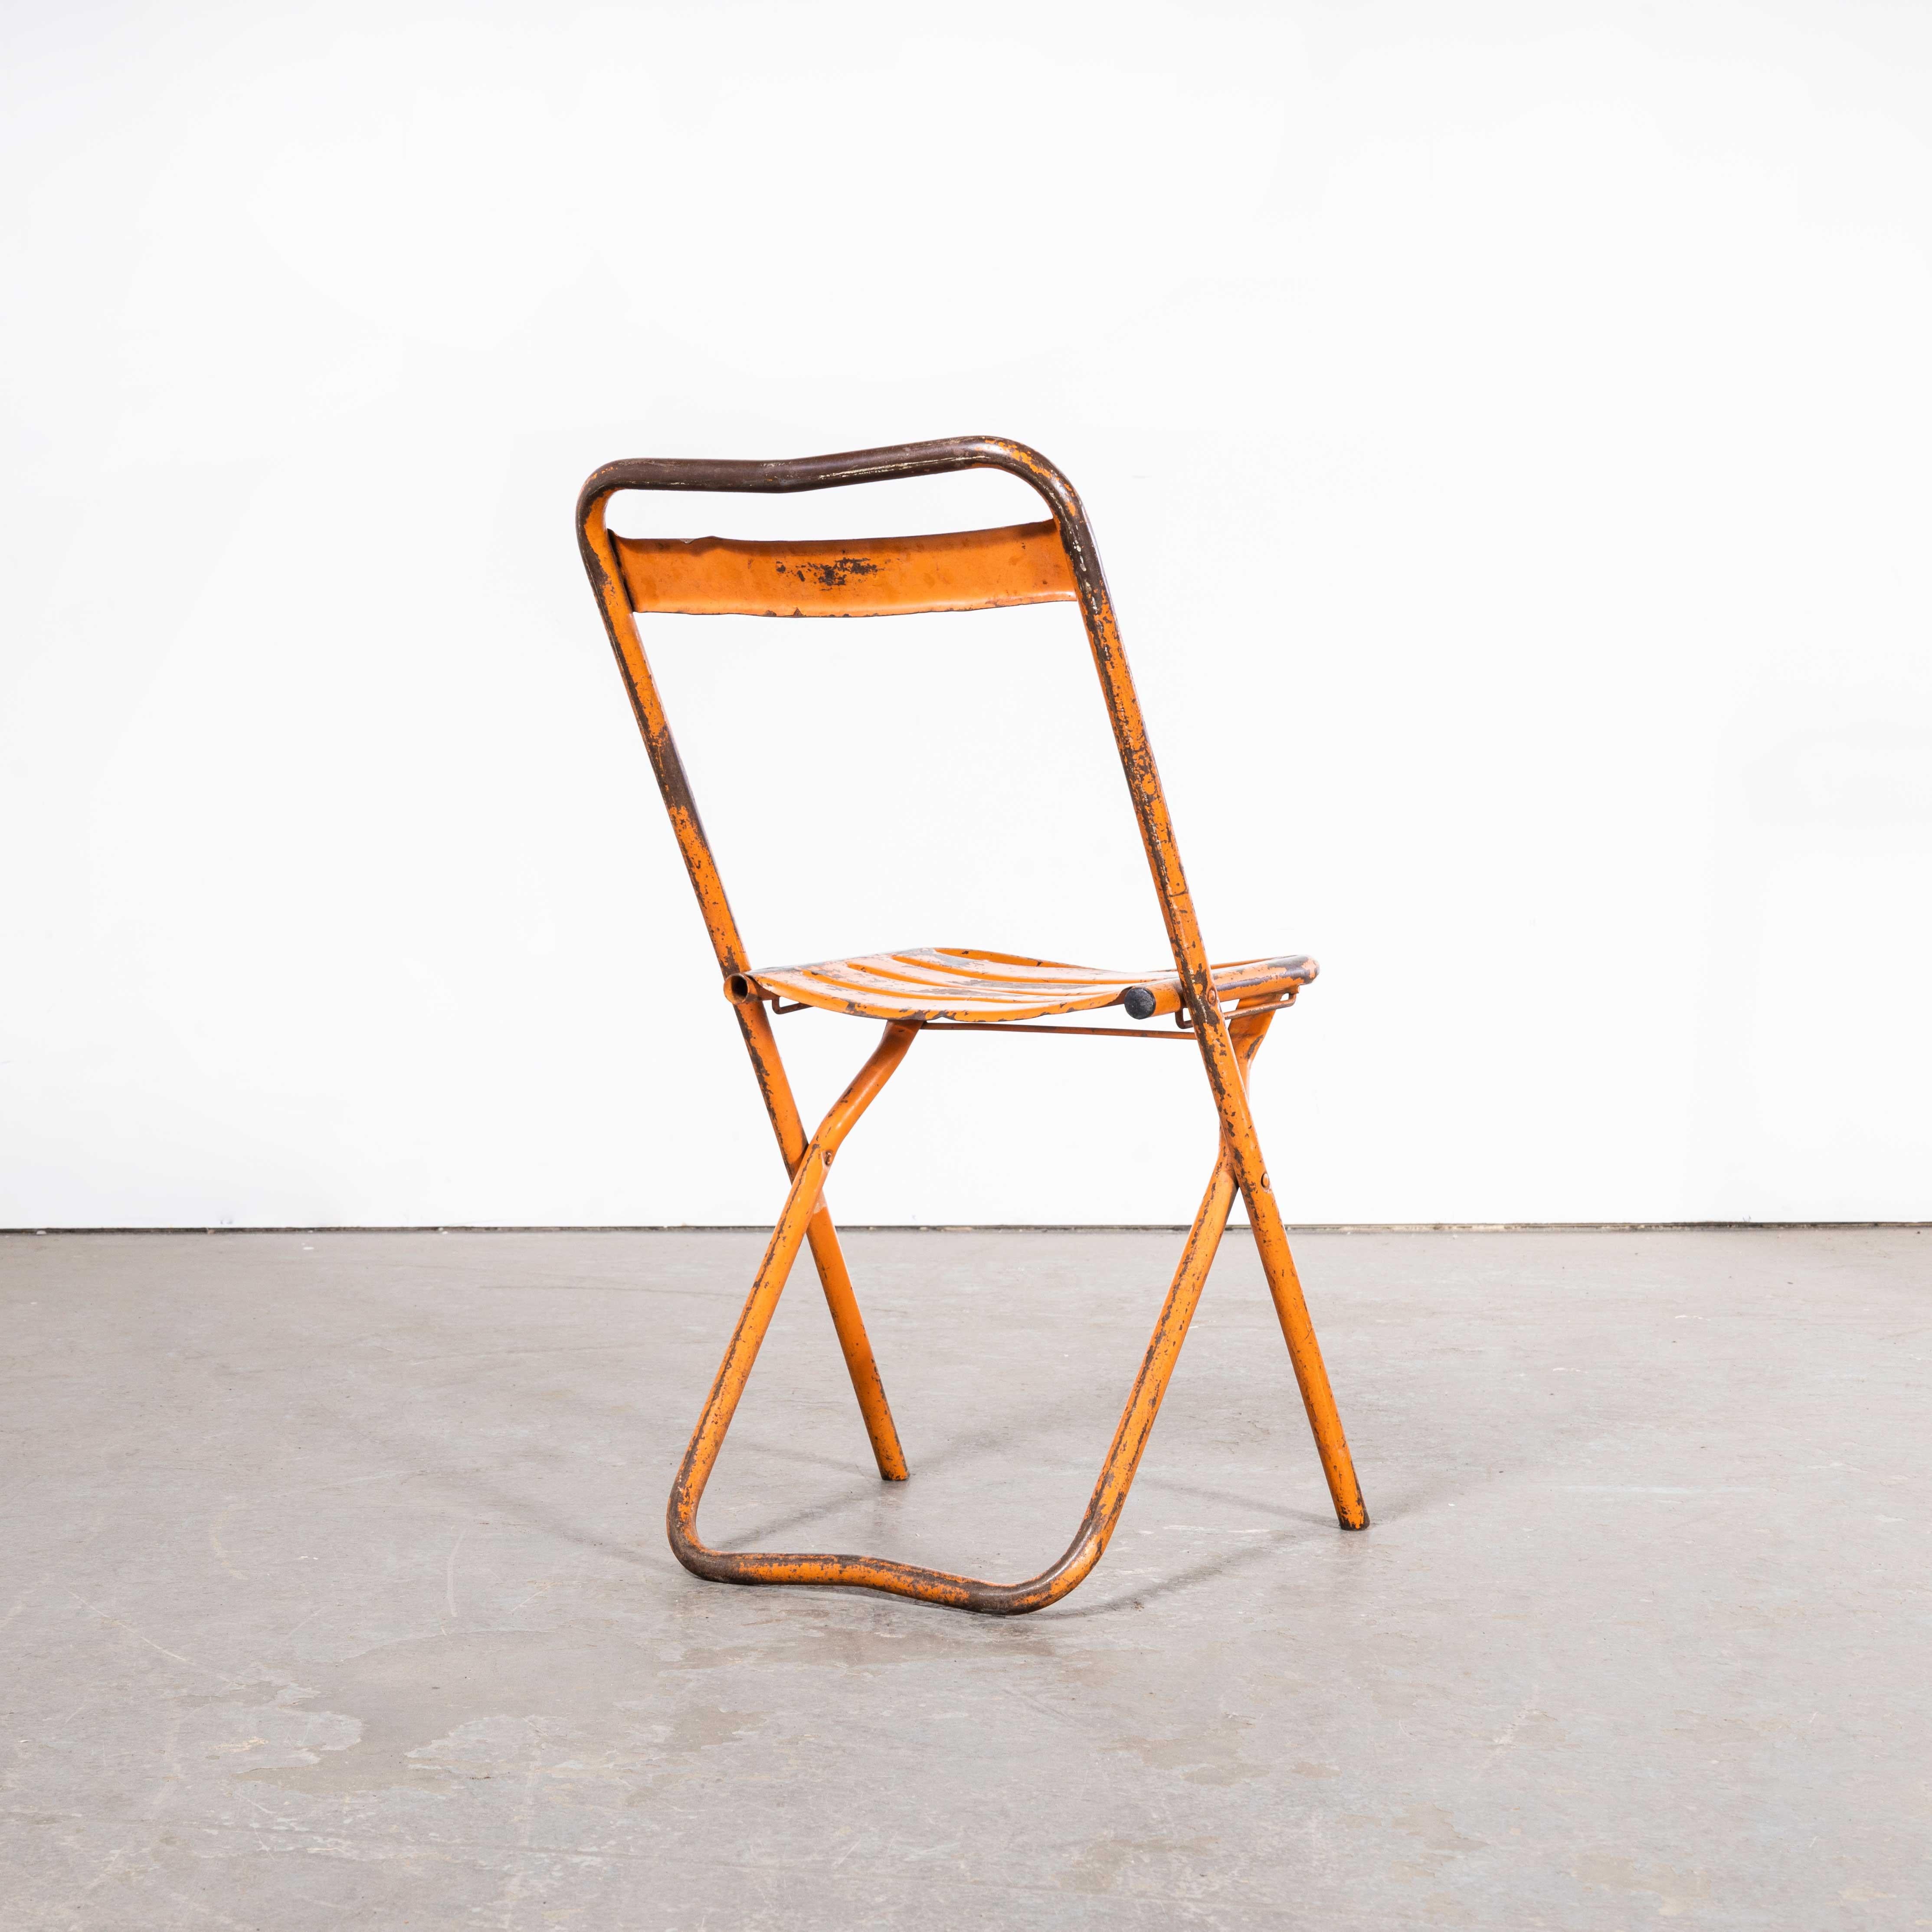 Original 1950's Orange Tolix Folding Metal Outdoor Chairs - Set Of Six
Original 1950's Orange Tolix Folding Metal Outdoor Chairs - Set Of Six. Tolix est l'une de nos entreprises préférées. En 1907, le Français Xavier Pauchard découvre qu'il peut